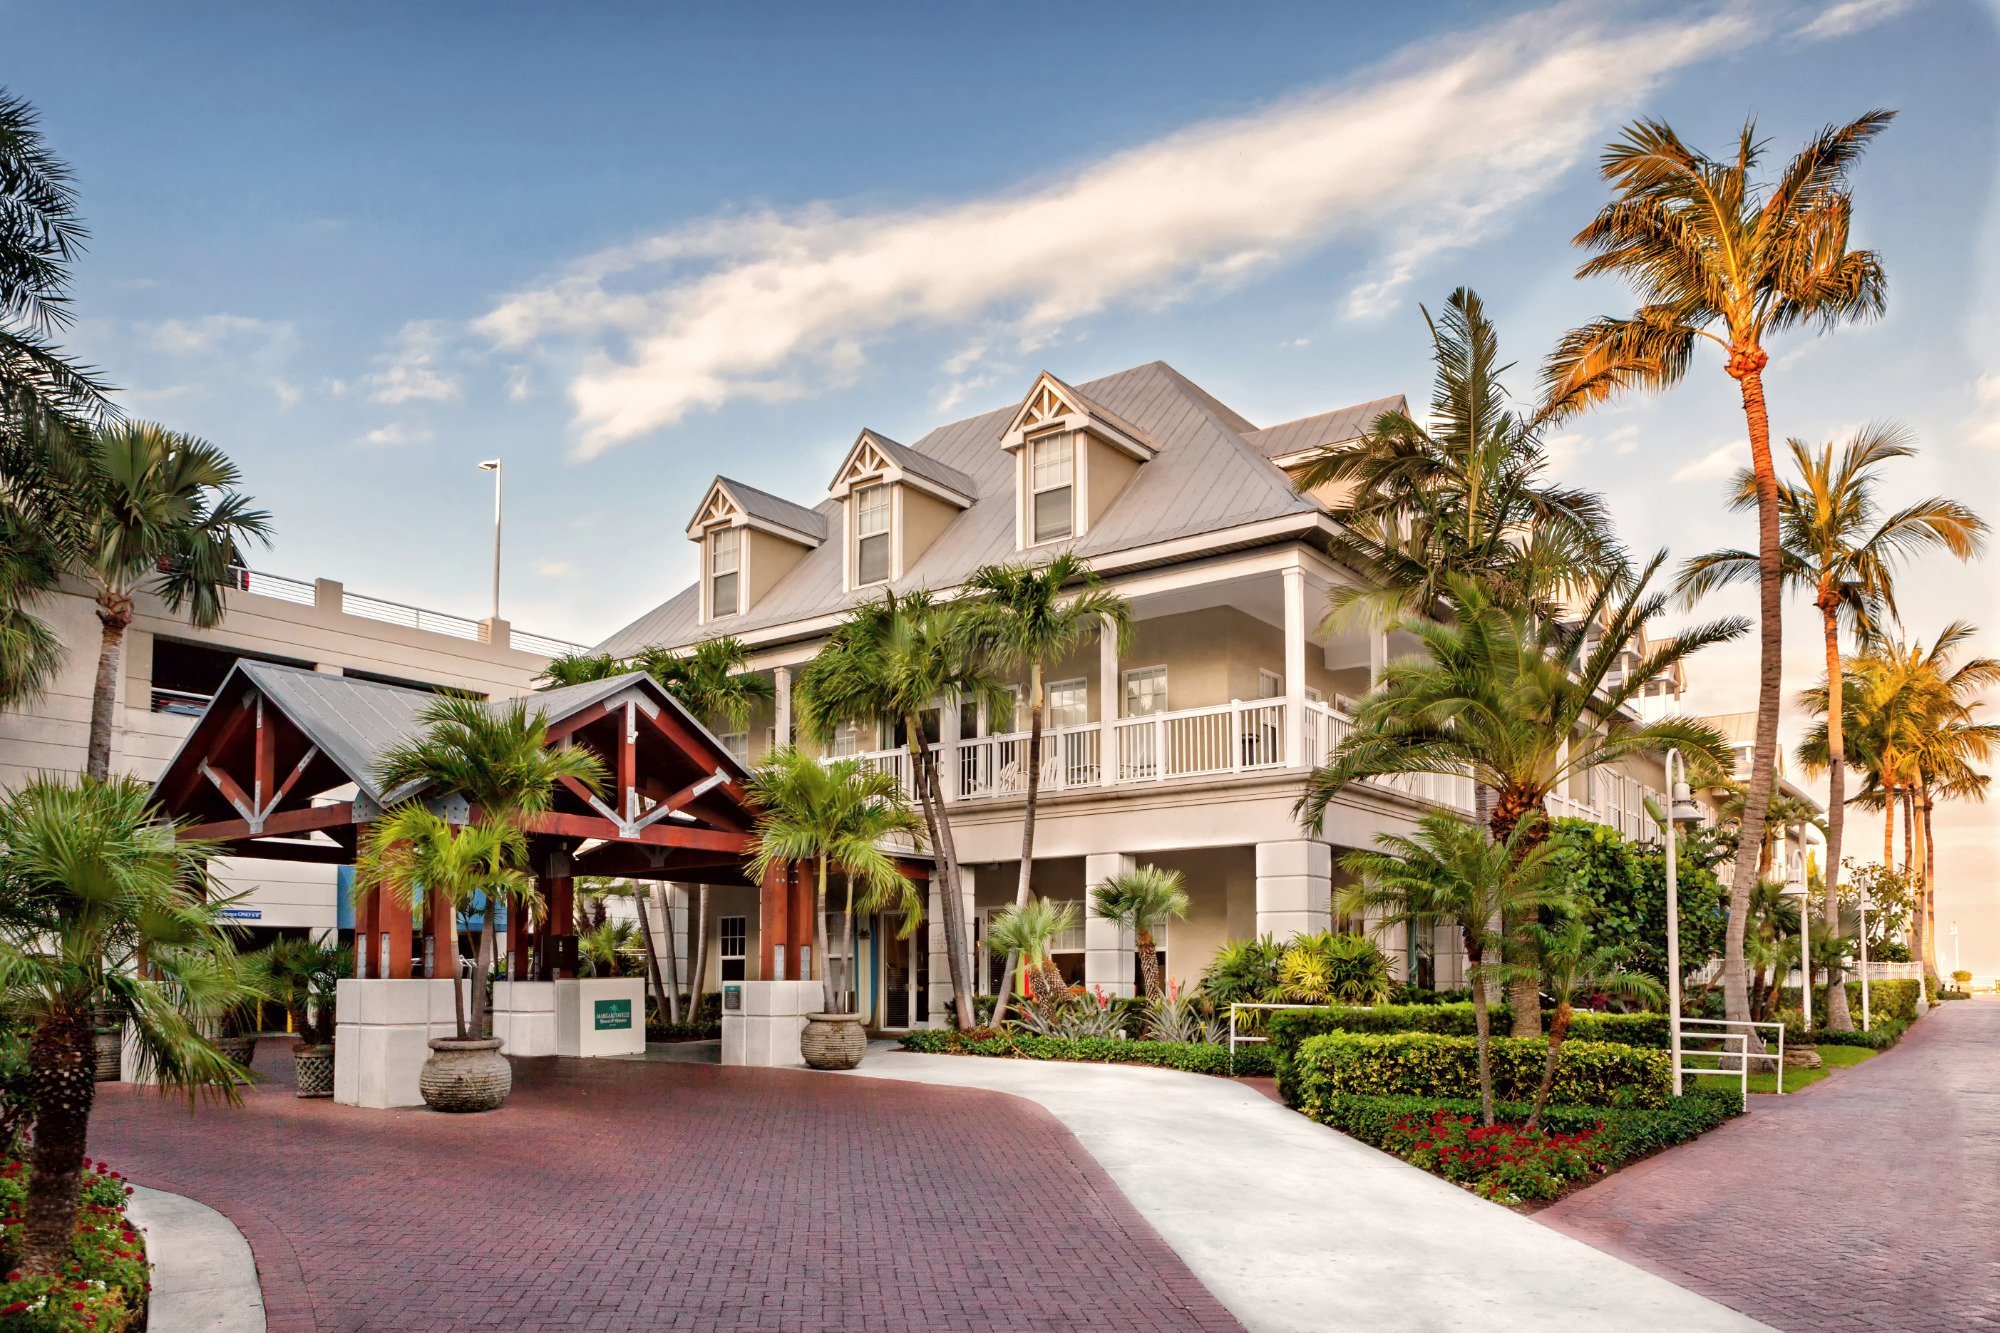 Photo of Margaritaville Key West Resort & Marina, Key West, FL